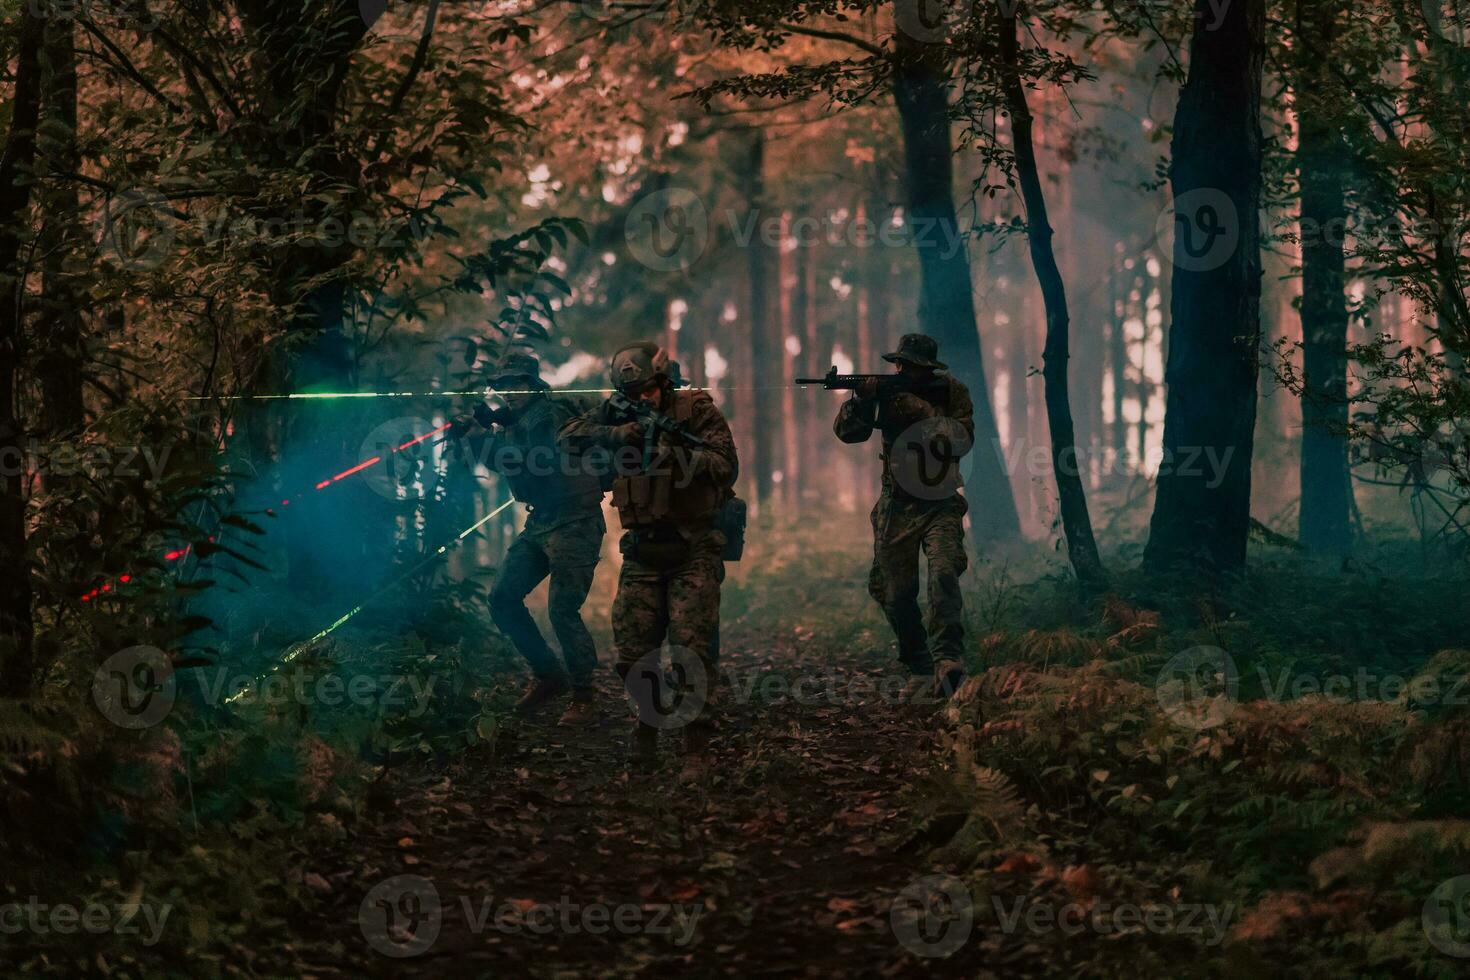 soldater trupp i verkan på natt uppdrag använder sig av laser syn stråle lampor militär team begrepp foto